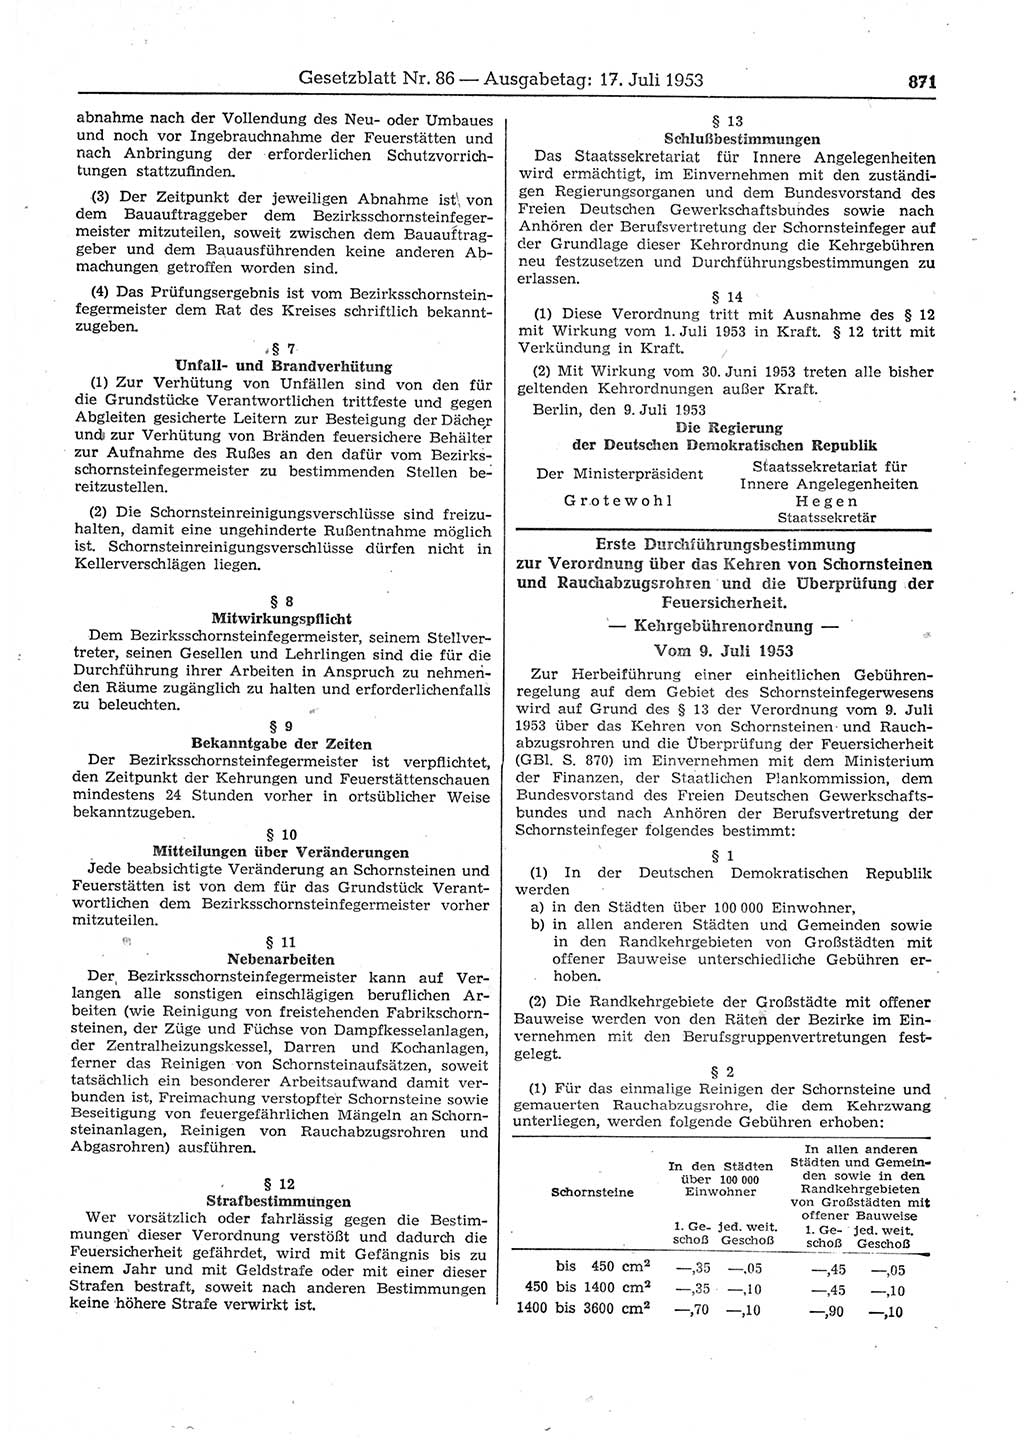 Gesetzblatt (GBl.) der Deutschen Demokratischen Republik (DDR) 1953, Seite 871 (GBl. DDR 1953, S. 871)